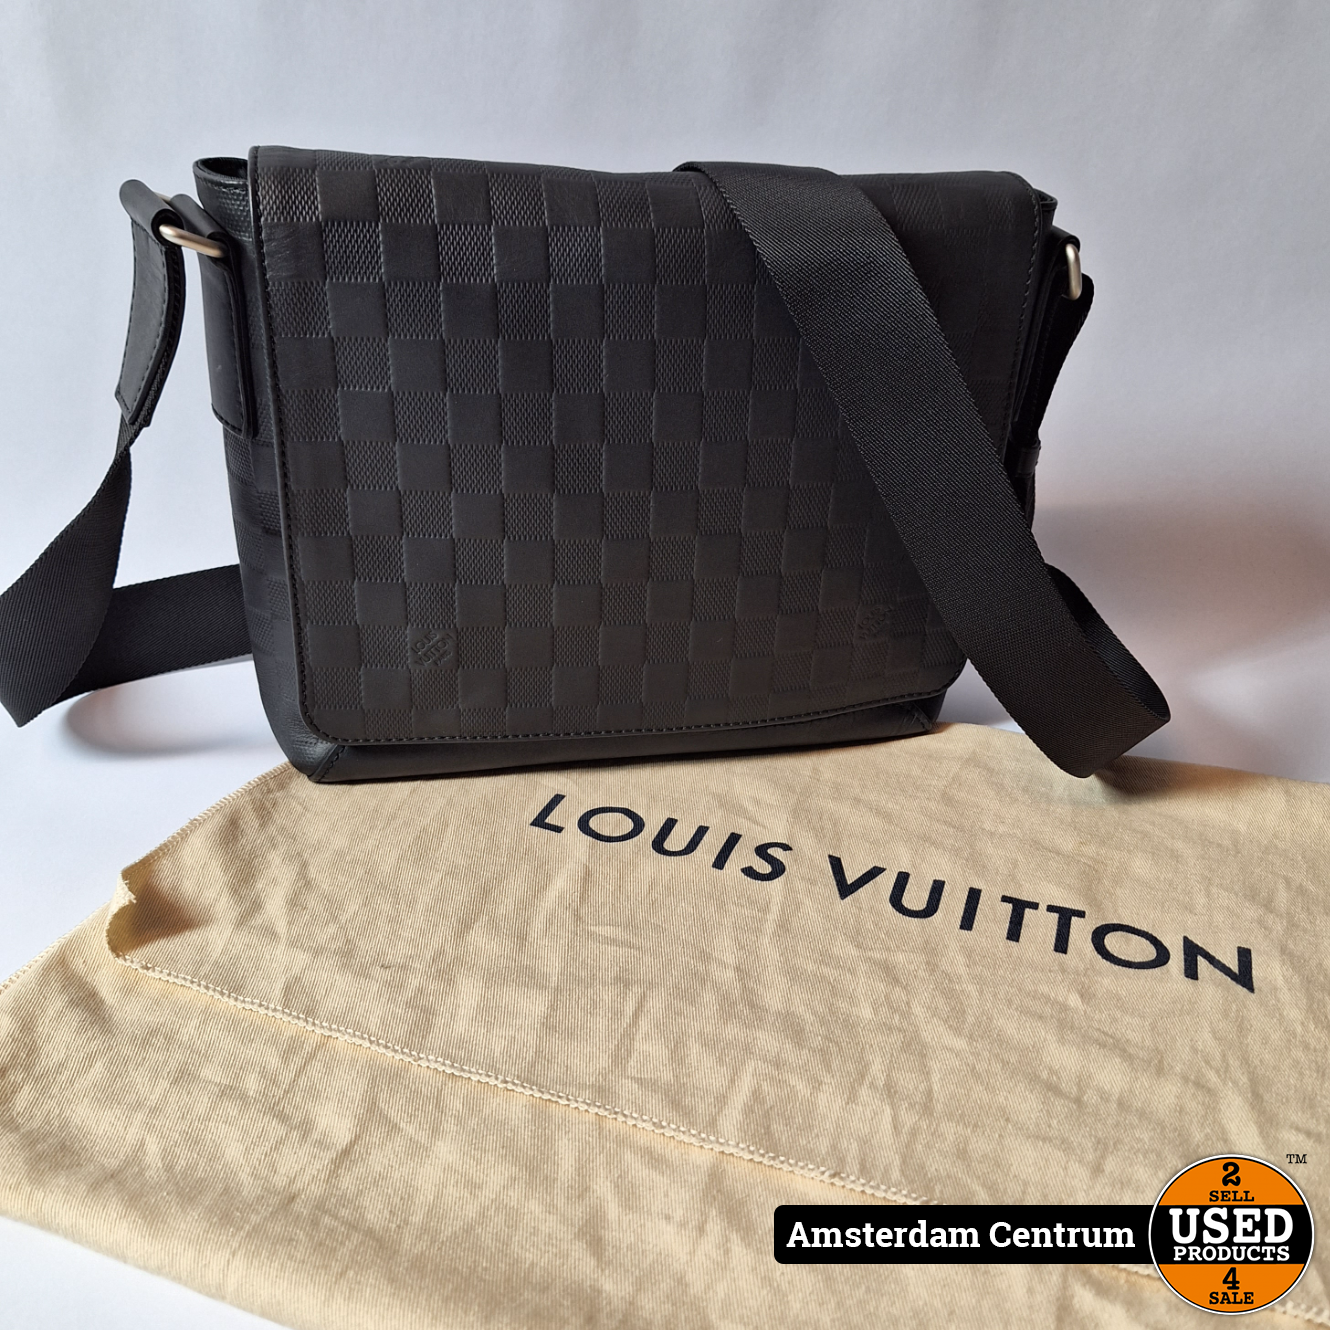 Louis Vuitton horloges - Alle prijzen voor Louis Vuitton horloges